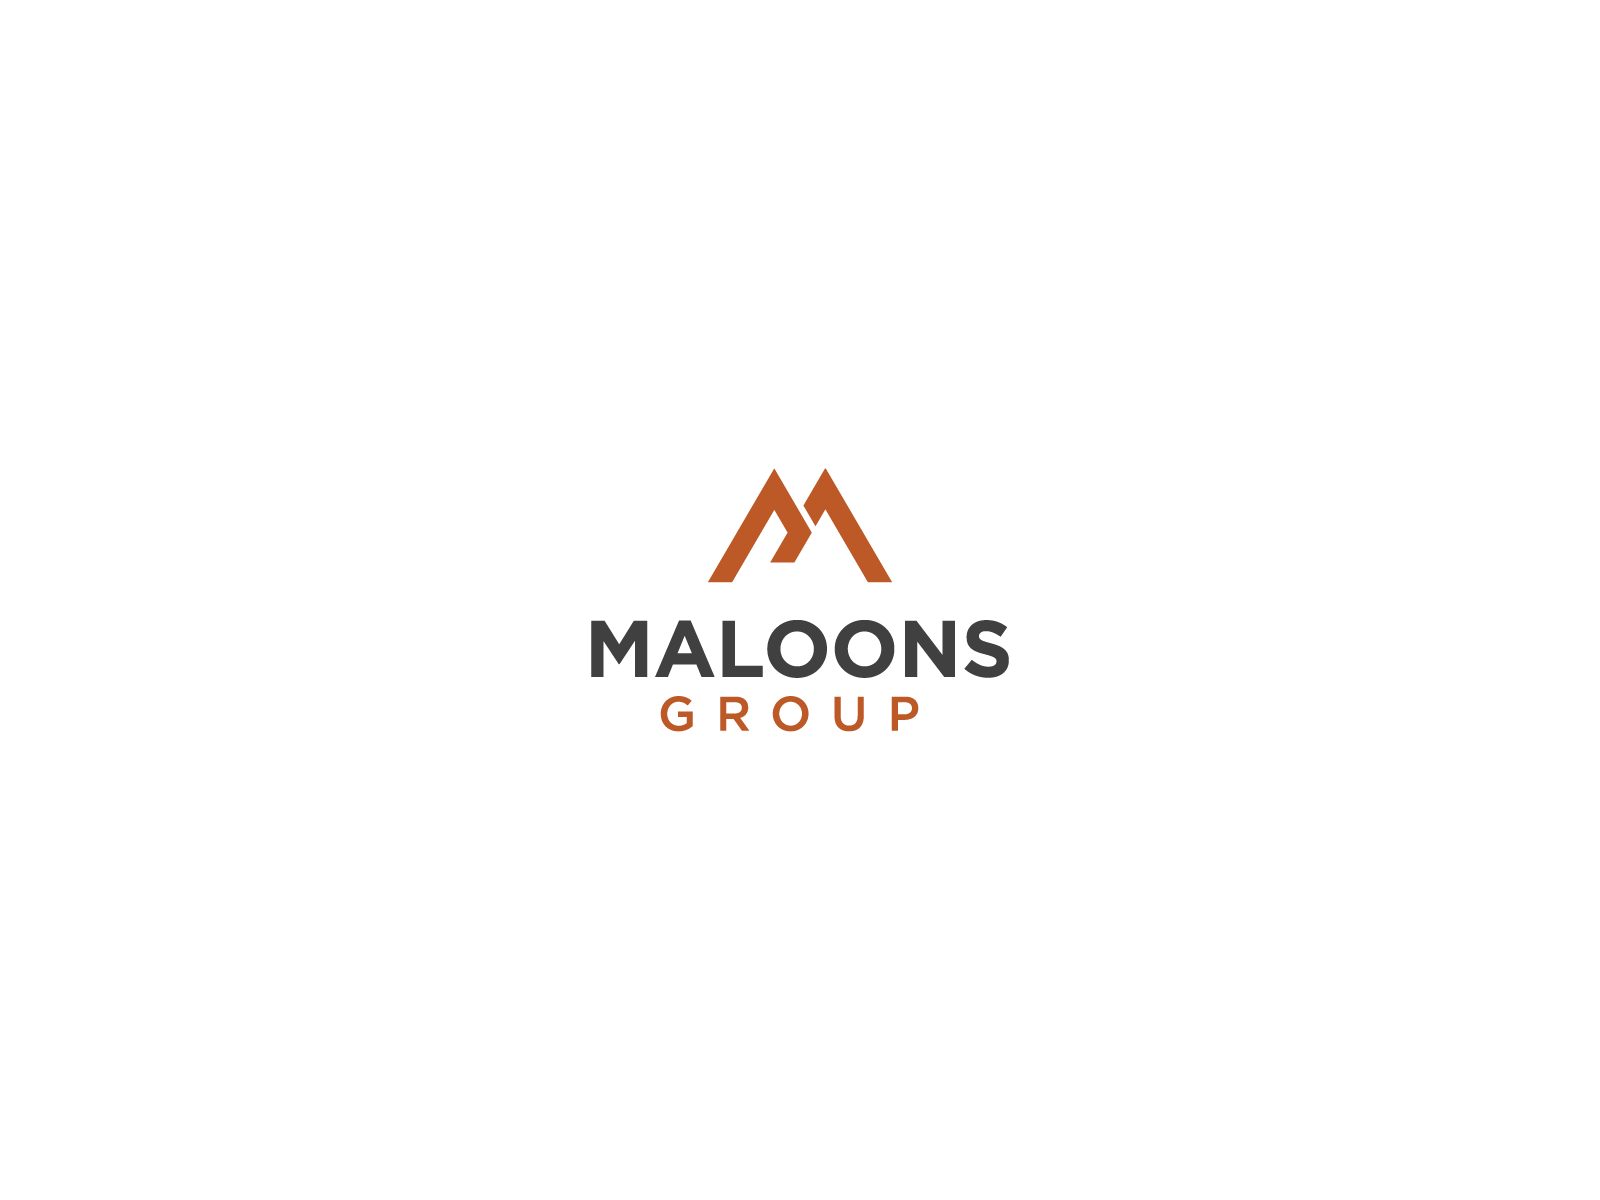 Maloons group logo 3d brand identity branding brandmark design graphic design illustration logo modern logo ui vector